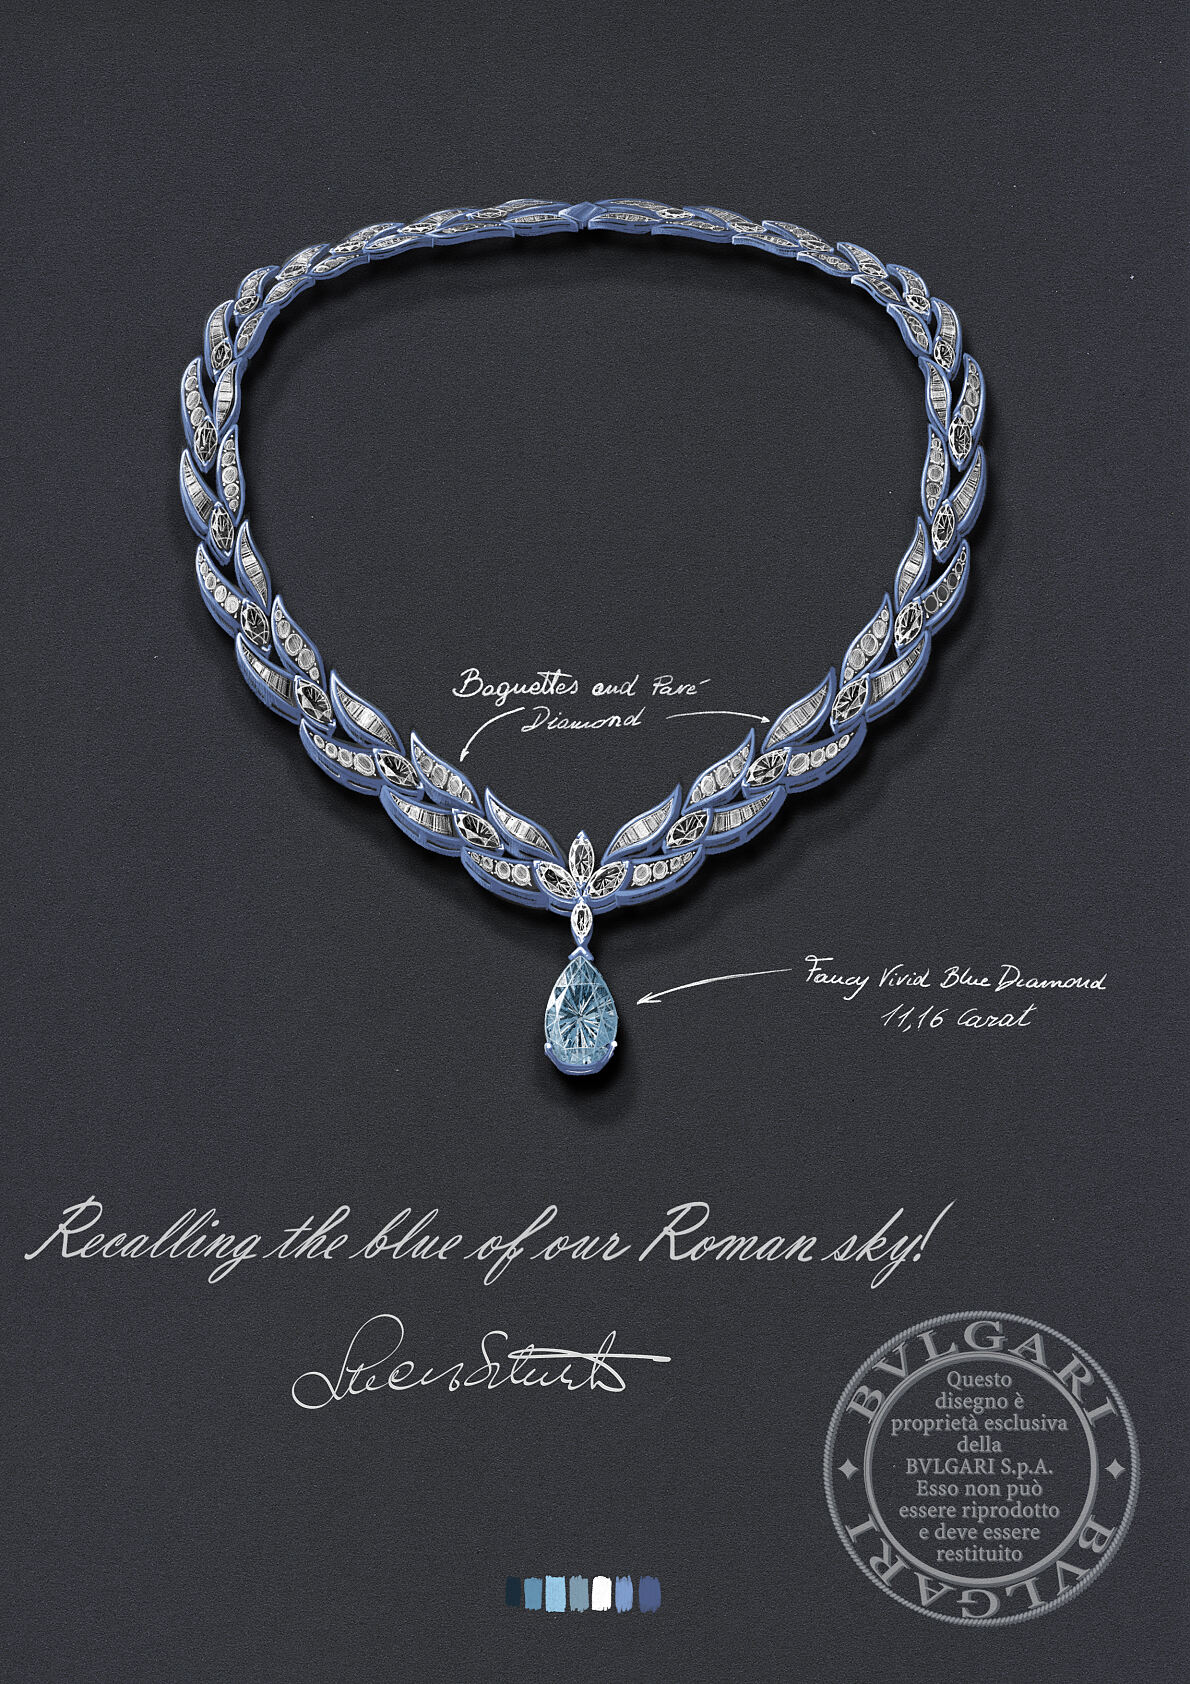 Bulgari_High Jewellery Collier_Bulgari Laguna Blu Diamond